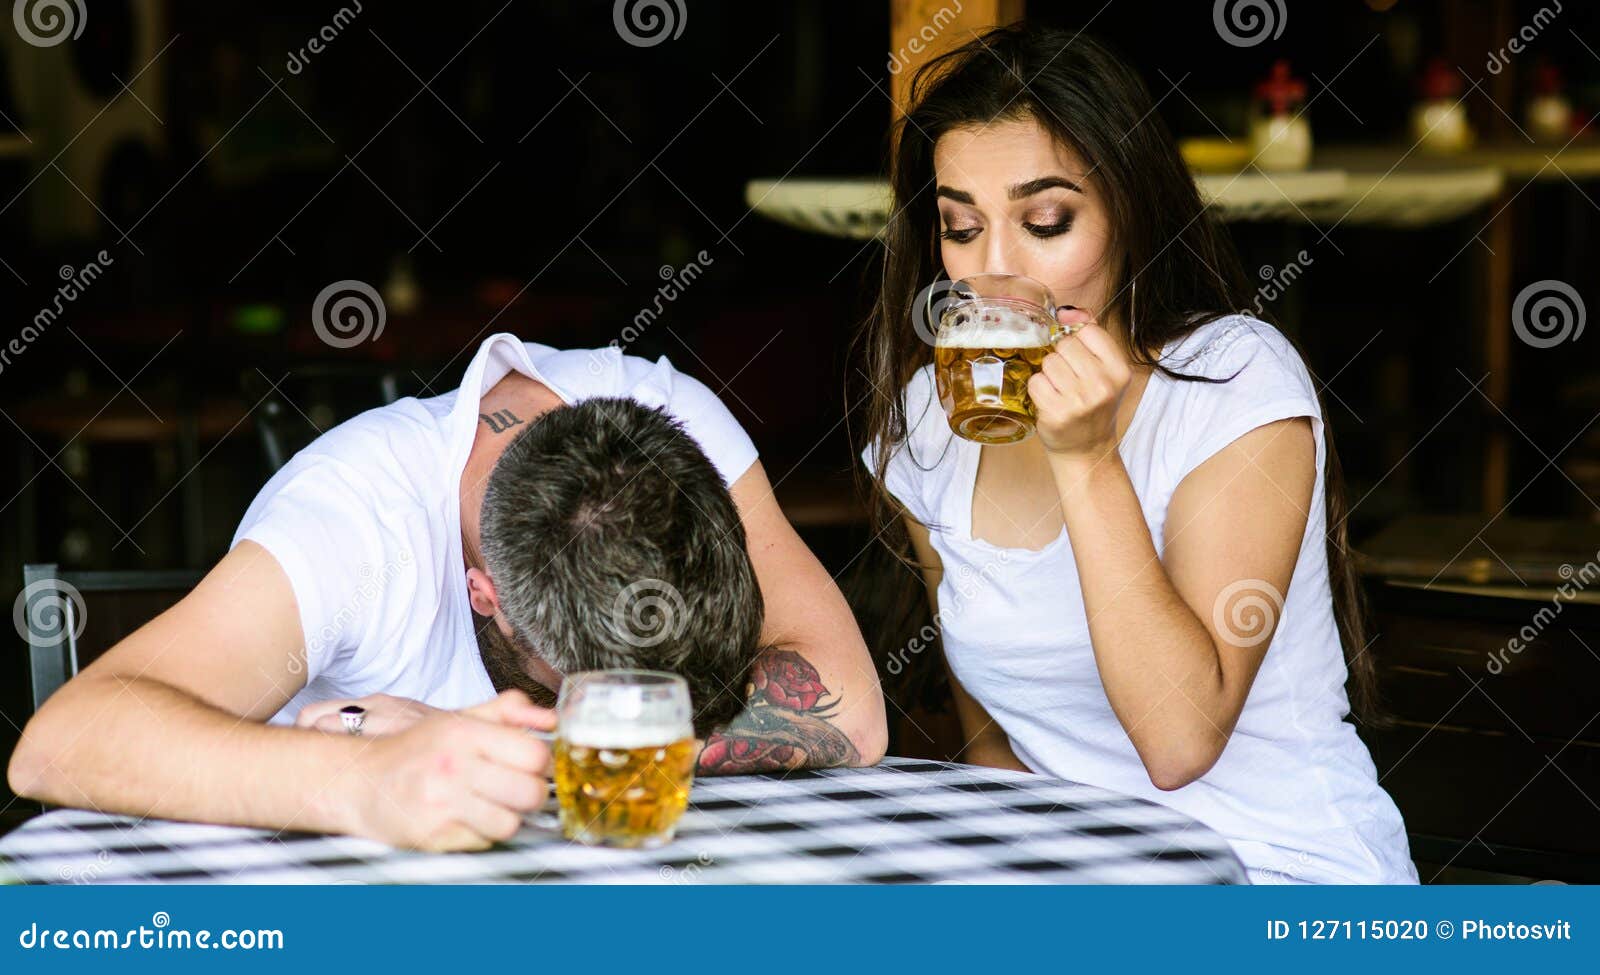 Пара пьет пиво